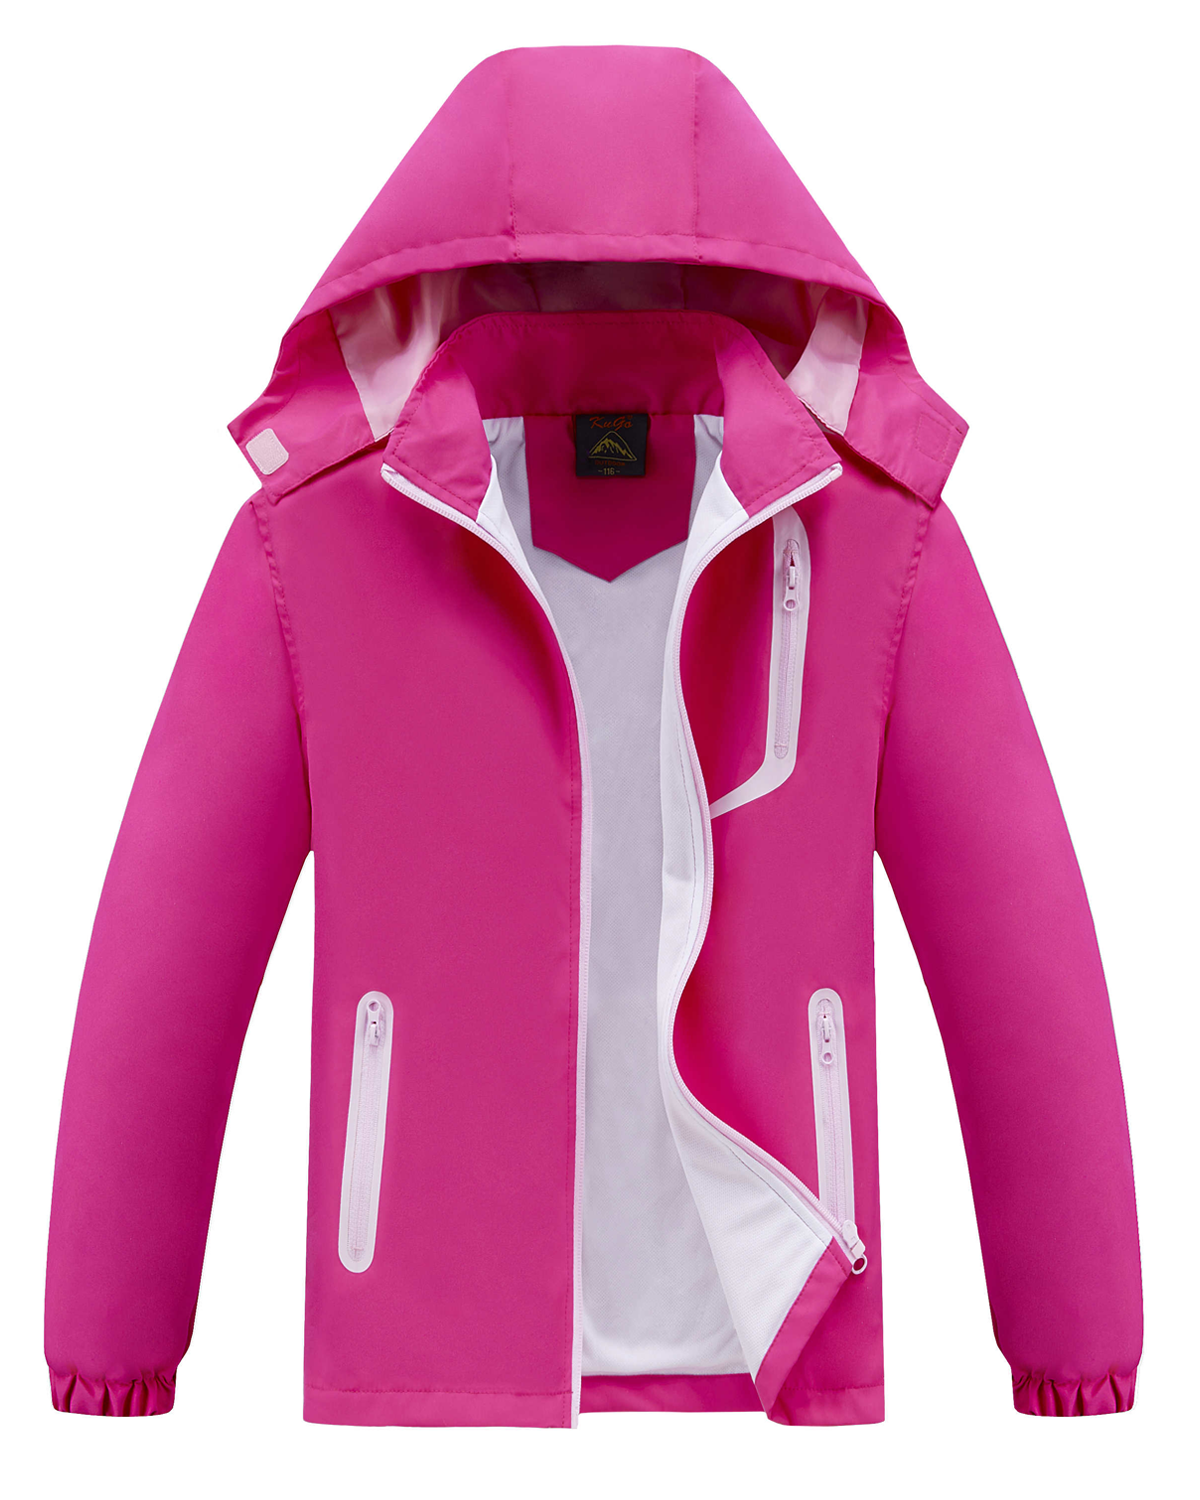 Dívčí jarní, podzimní bunda - KUGO B2868, růžová Barva: Růžová, Velikost: 122